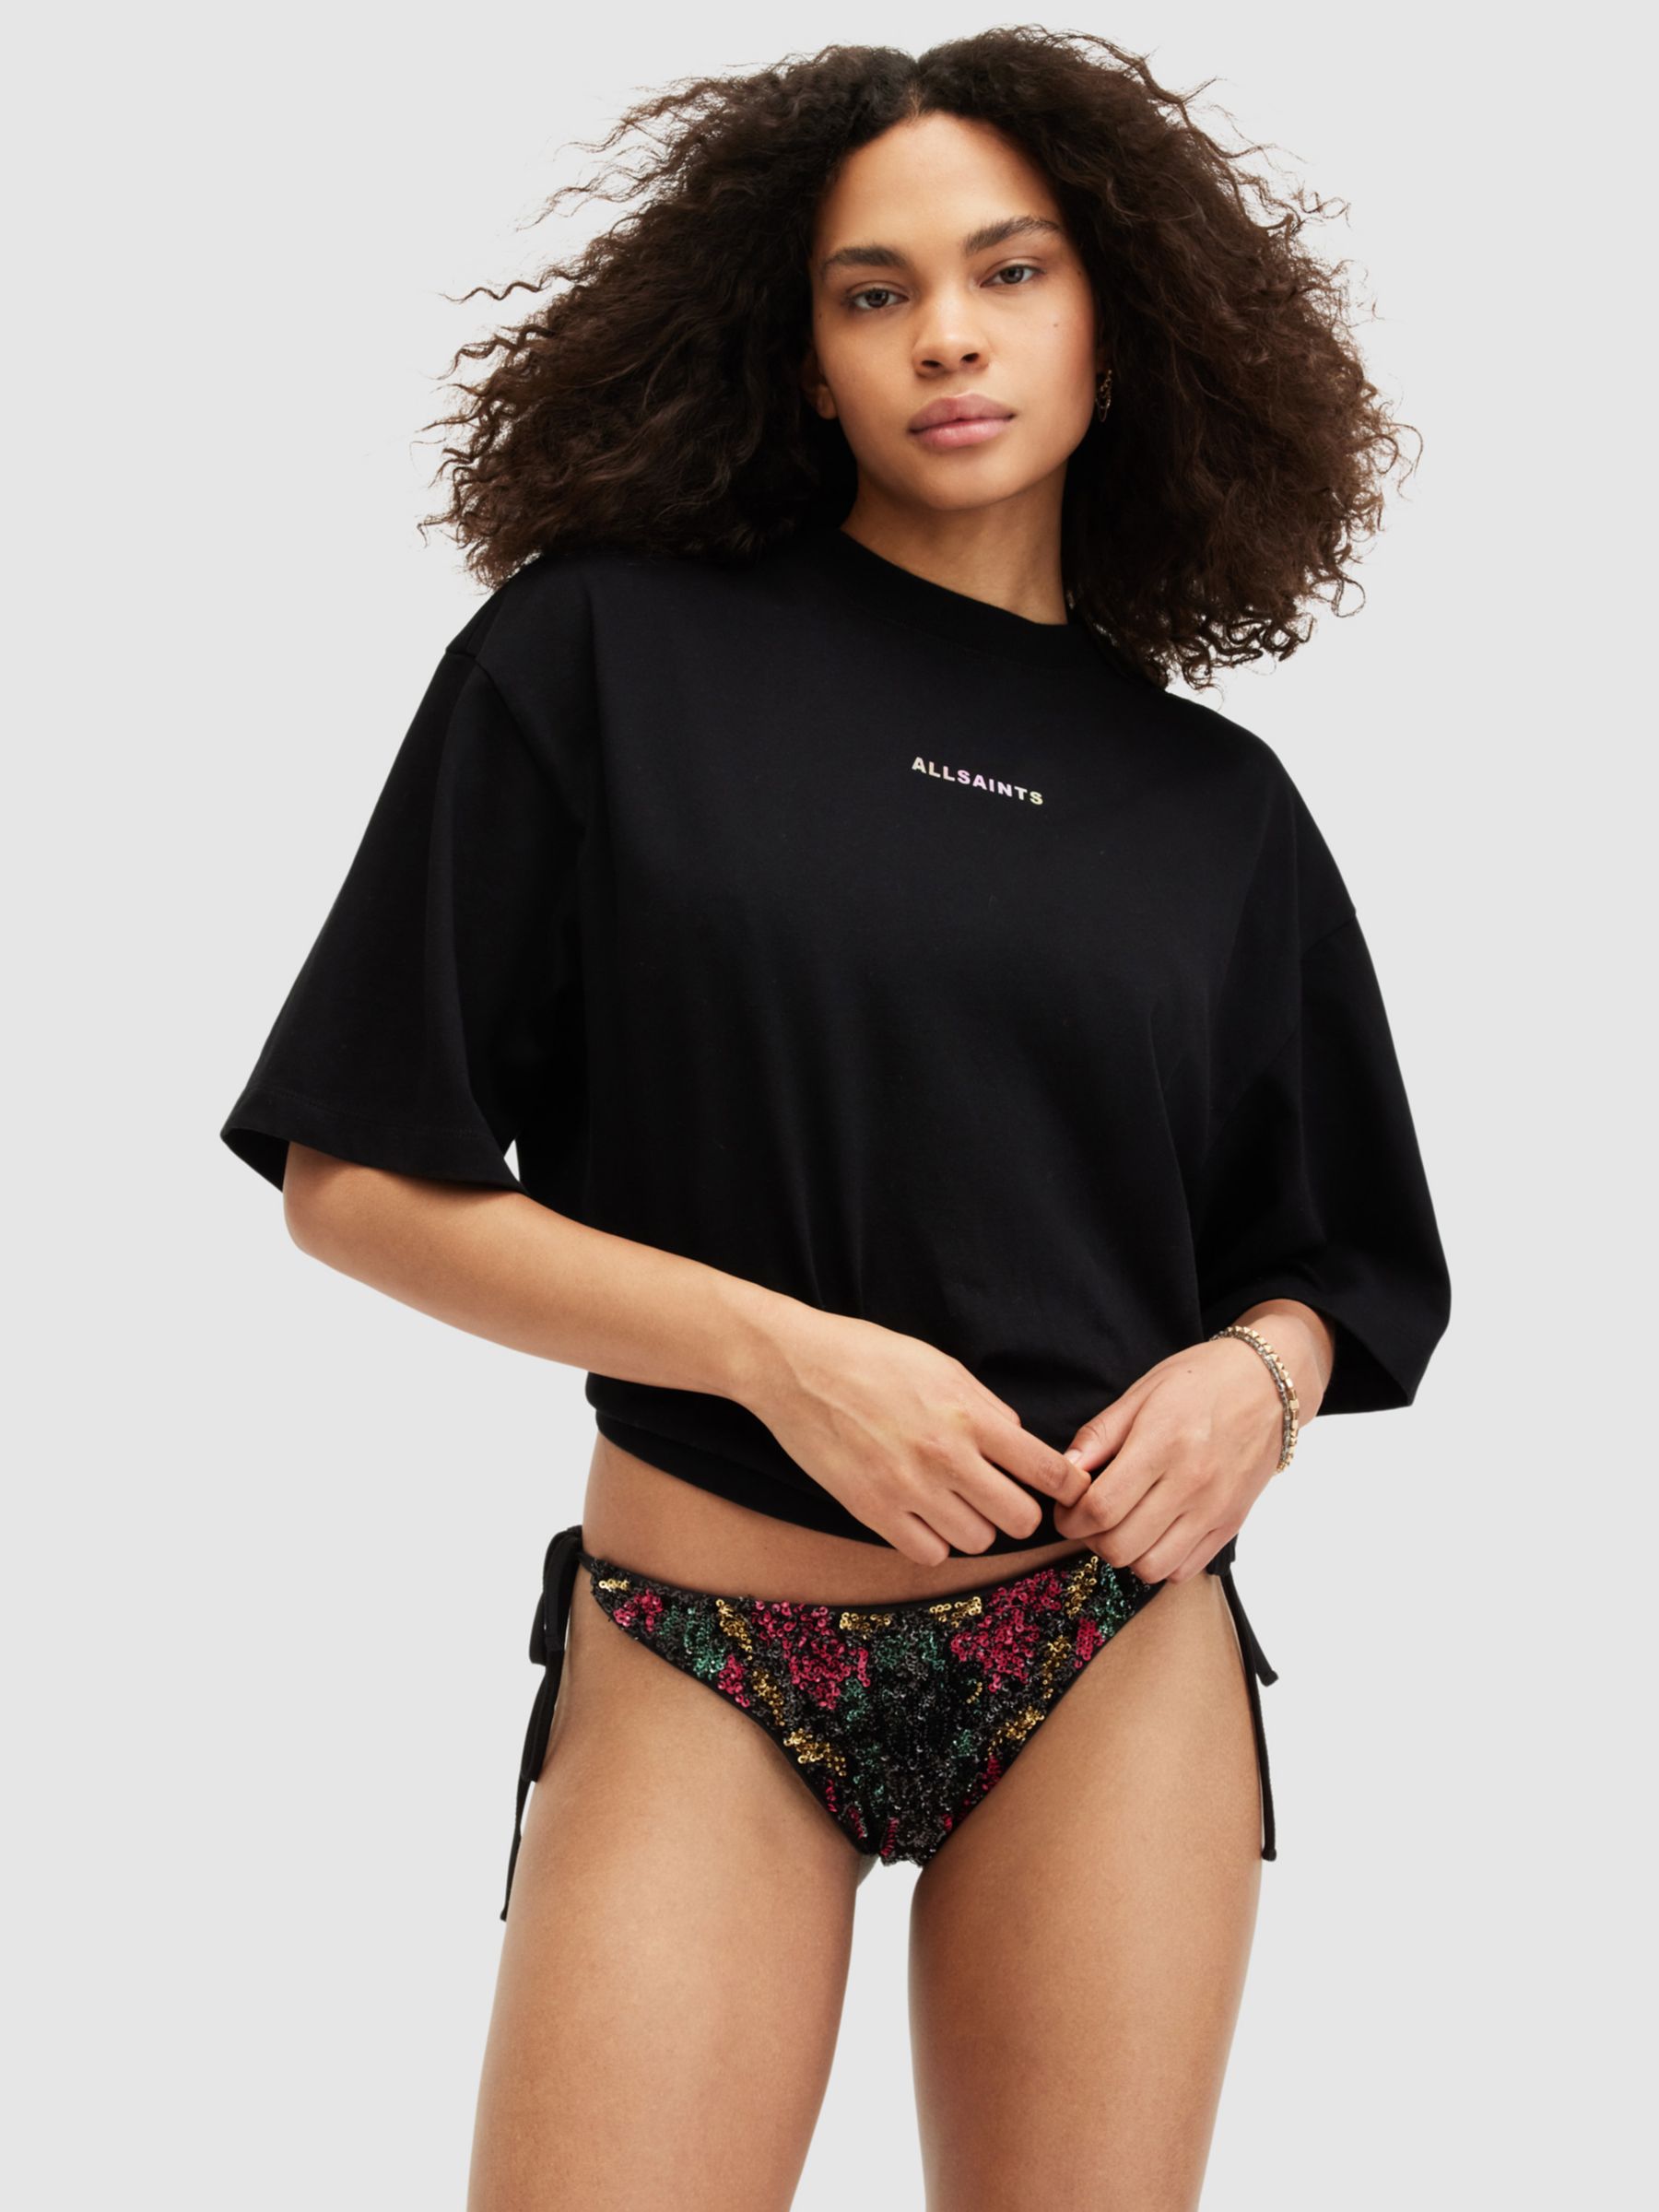 AllSaints Jamilia Sequin Embroidery Side Tie Bikini Bottoms, Black/Multi, 10